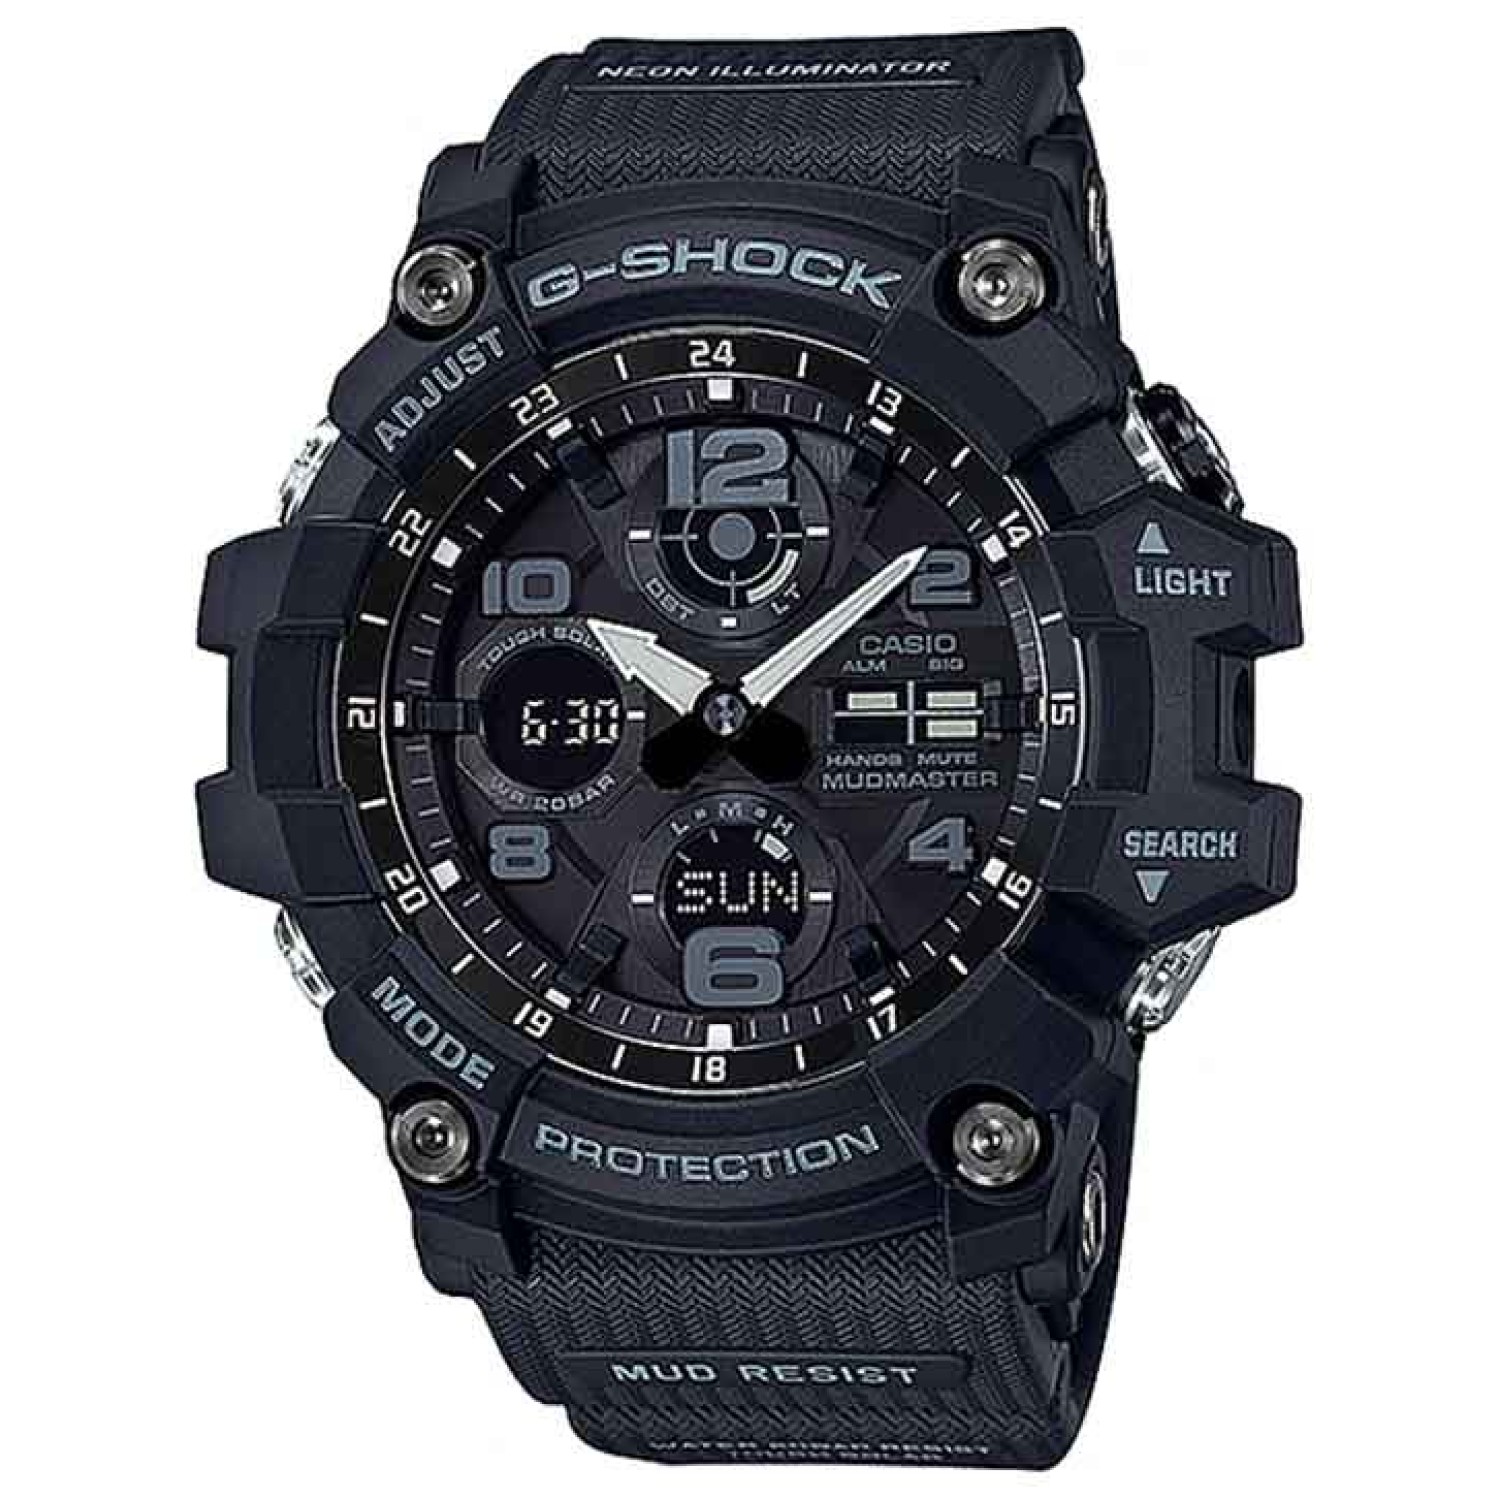 GSG100-1A G-SHOCK Mudmaster Master of G Series.casio watches nz sale $599.00